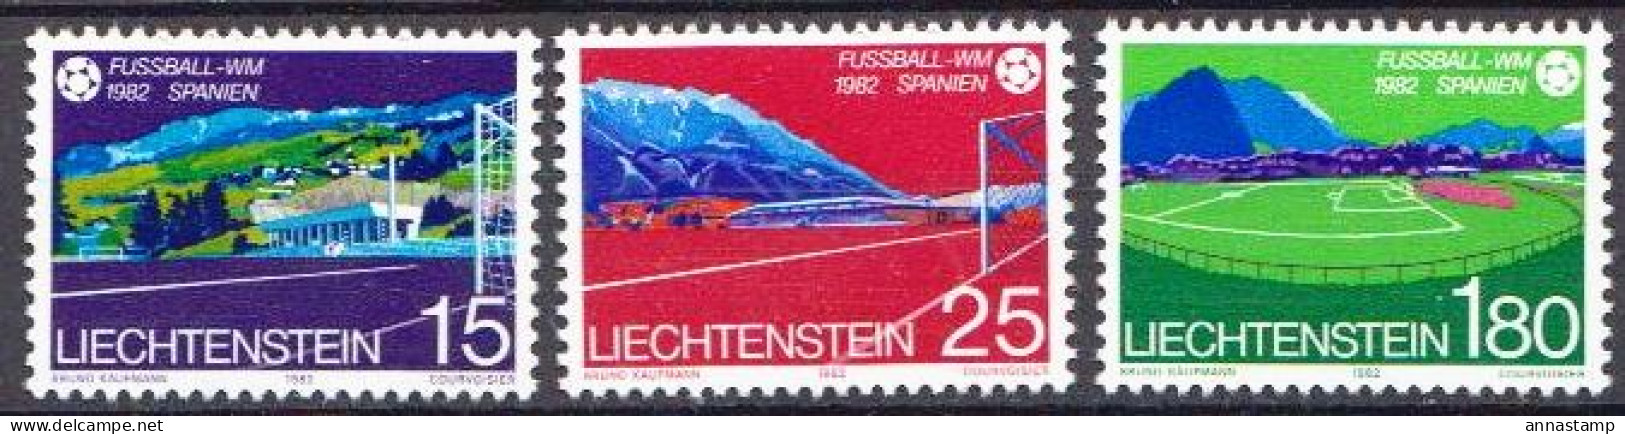 Liechtenstein MNH Set - 1982 – Espagne